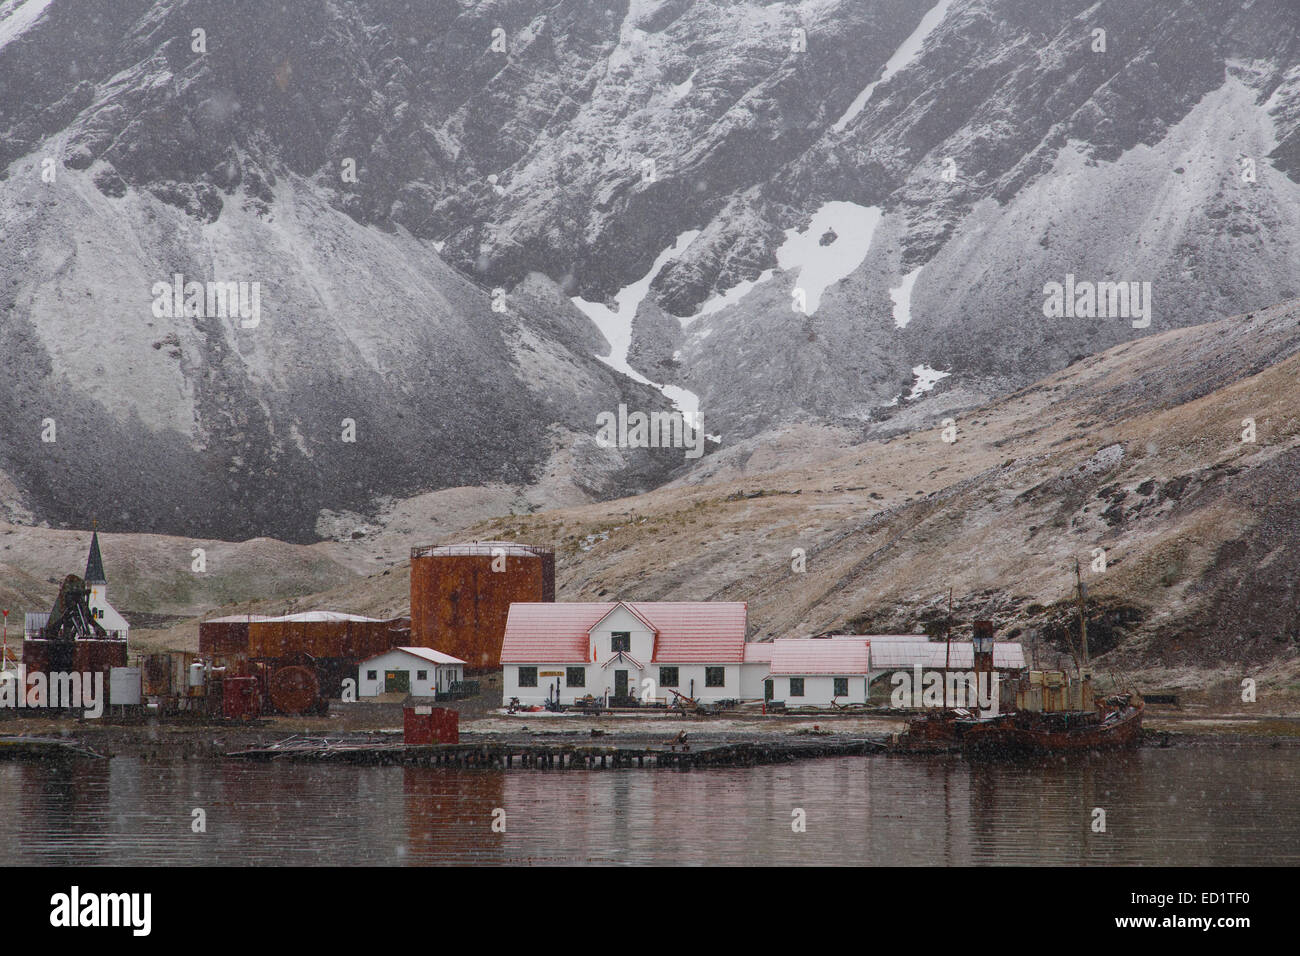 La station historique de Grytviken, en Géorgie du Sud, l'Antarctique. Banque D'Images